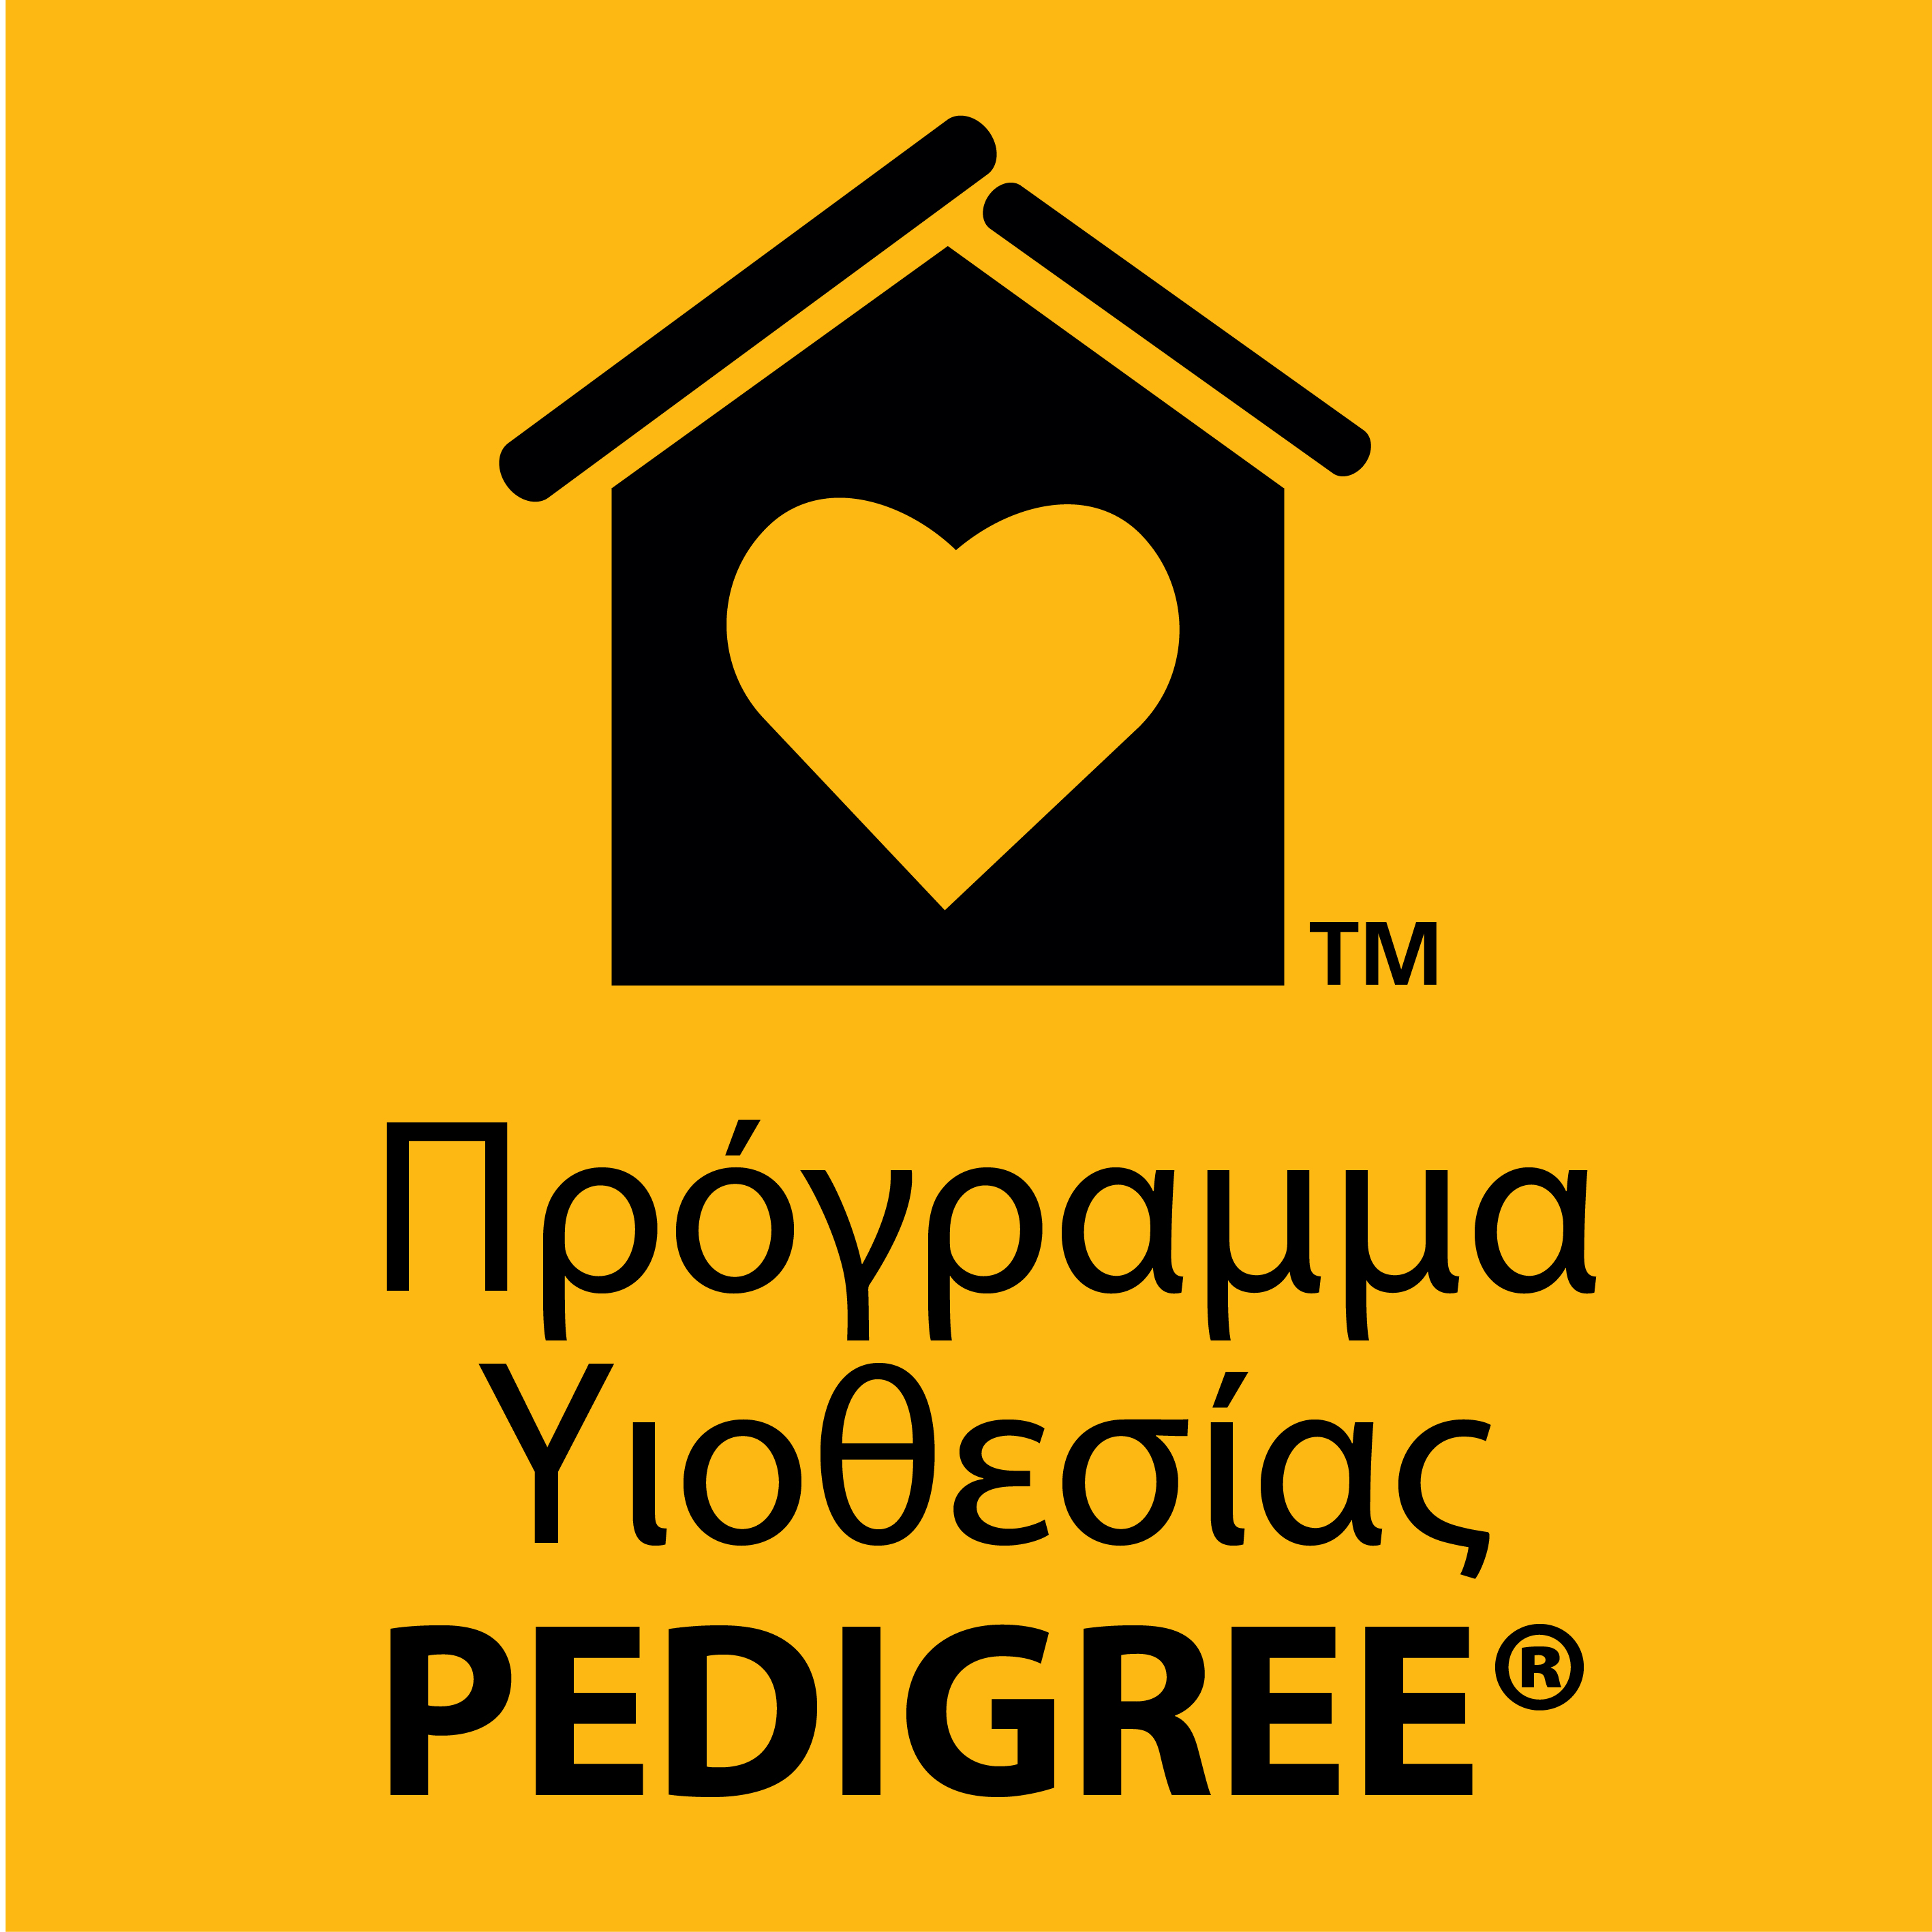 Πρόγραμμα υιοθεσίας Pedigree